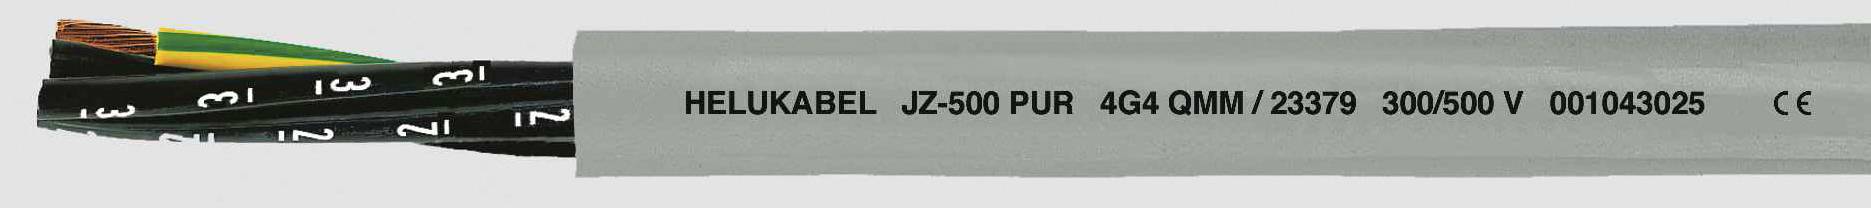 HELUKABEL JZ-500 PUR Steuerleitung 5 G 0.75 mm² Grau 23334-1000 1000 m